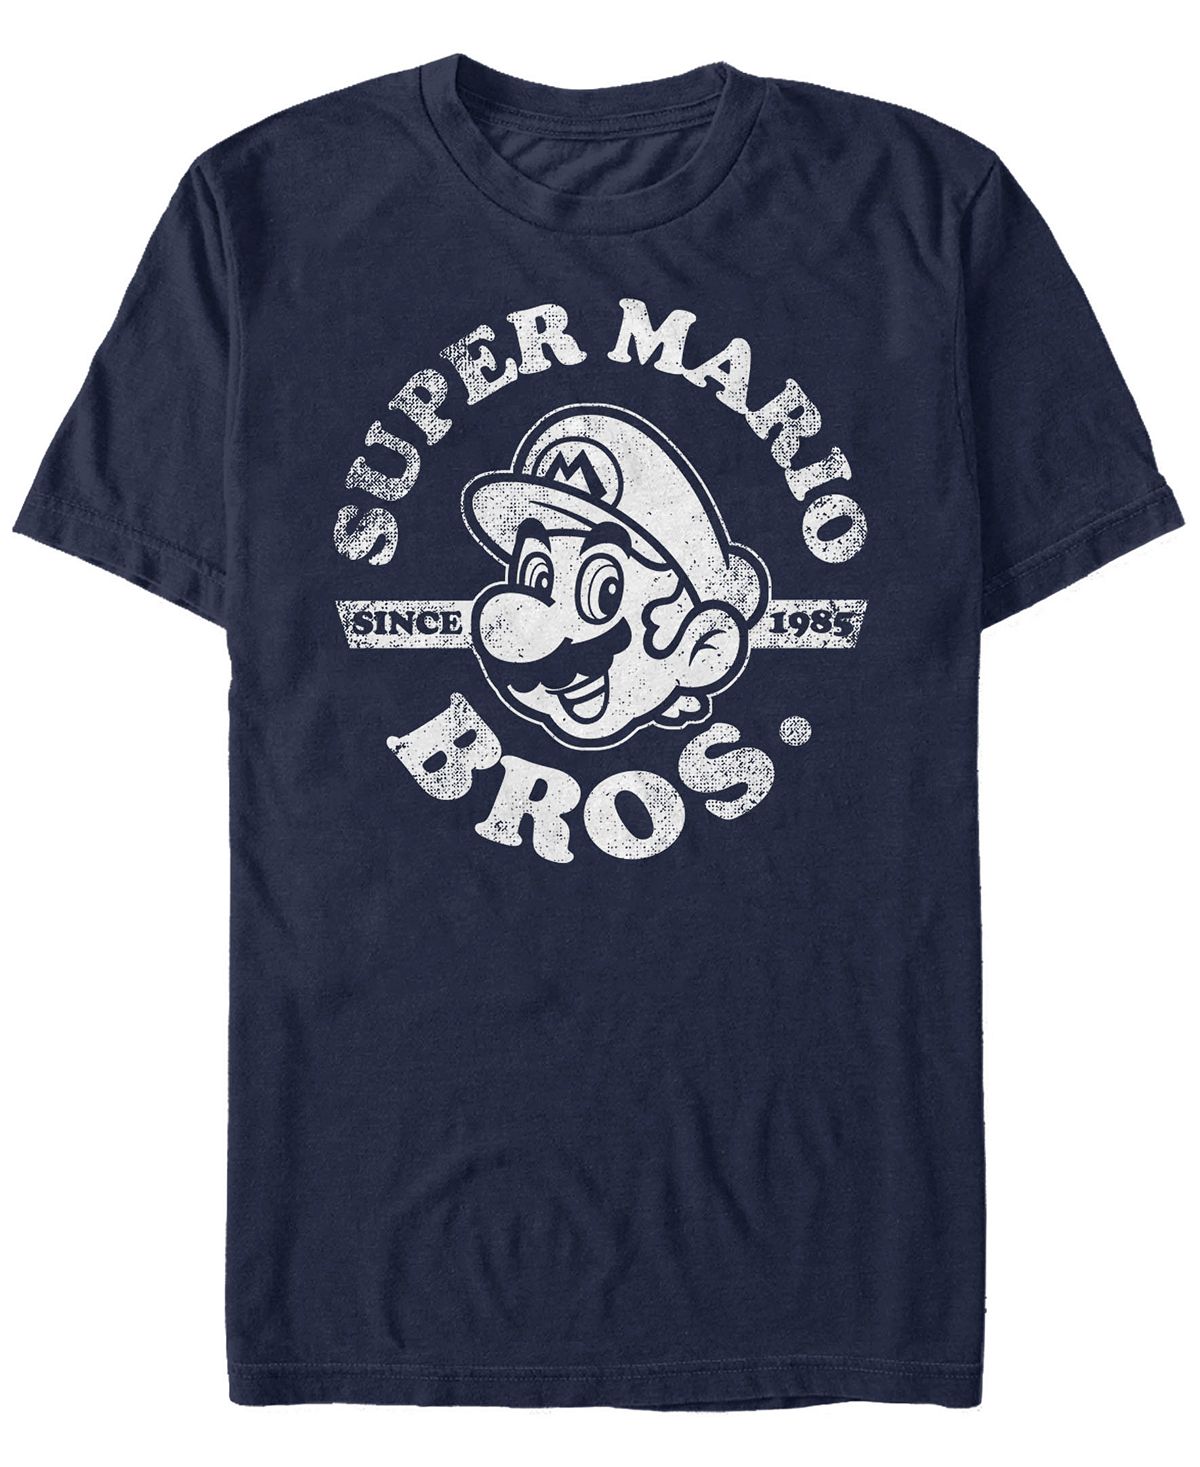 Мужская футболка nintendo super mario bros. с 1985 года с коротким рукавом Fifth Sun, синий